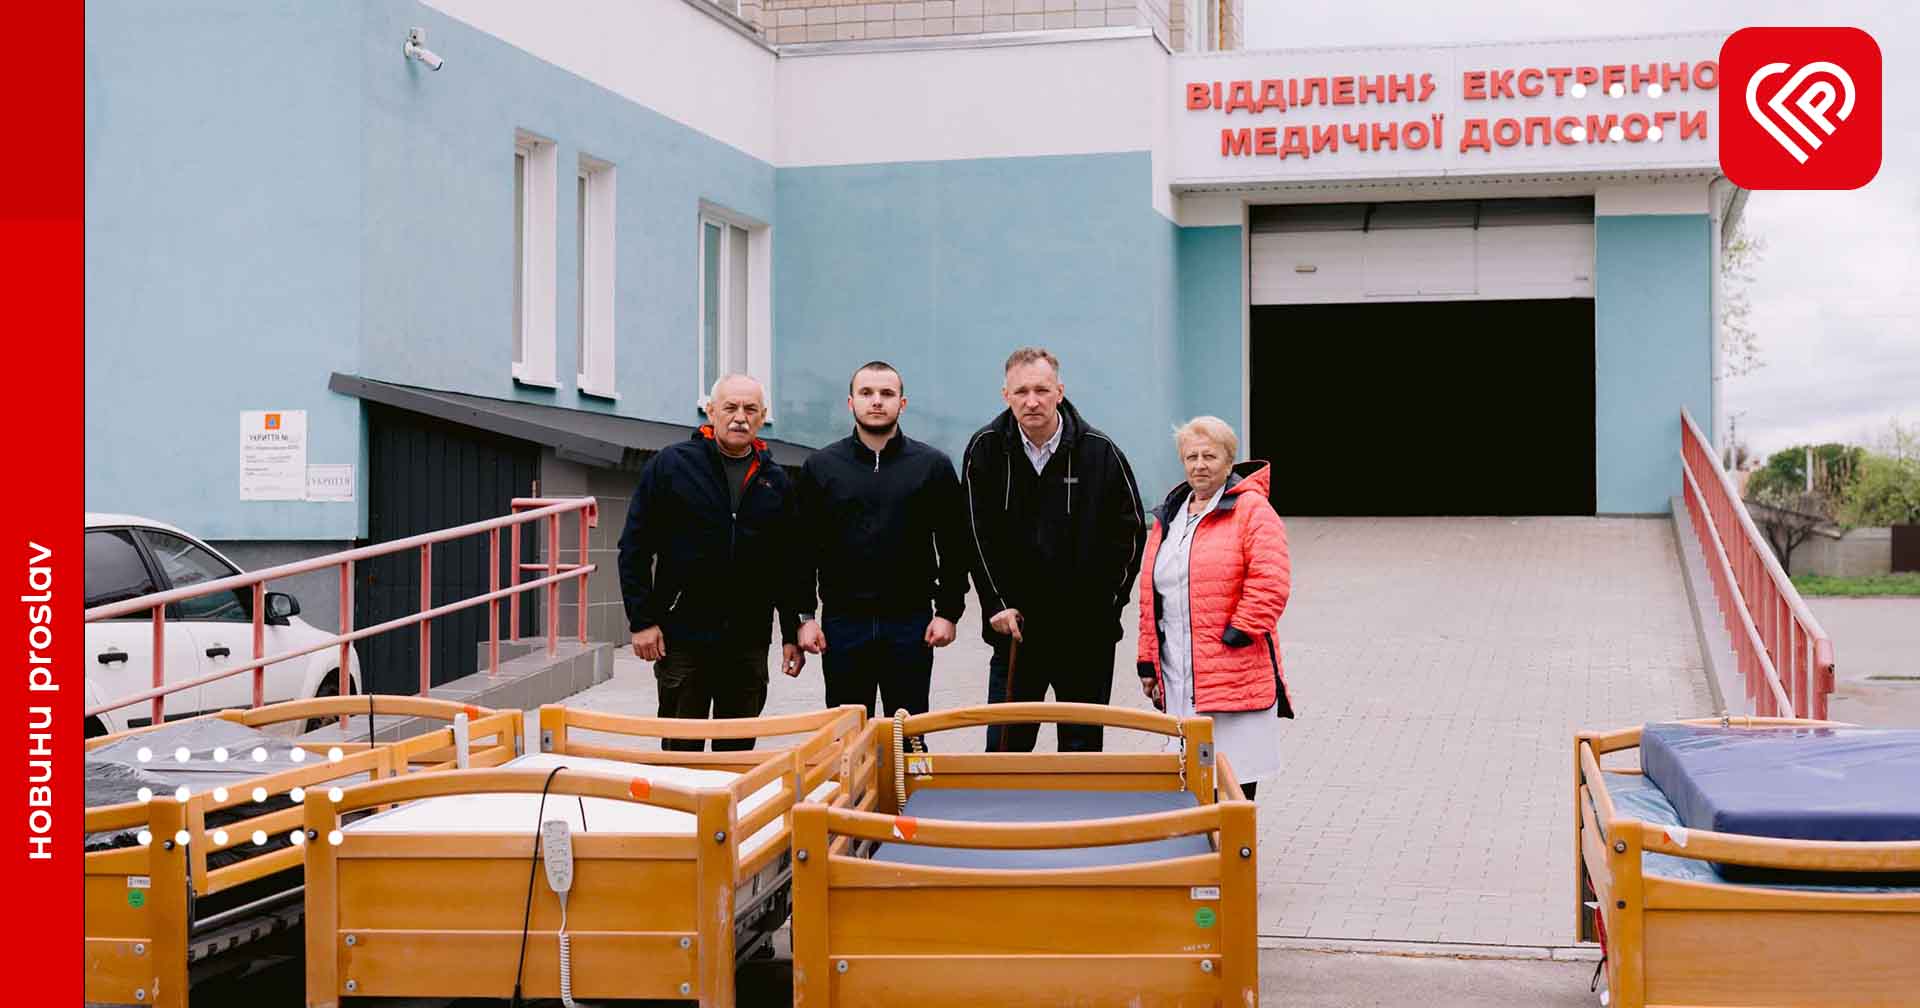 Родина Ярем подарувала переяславській лікарні багатофункціональні ліжка